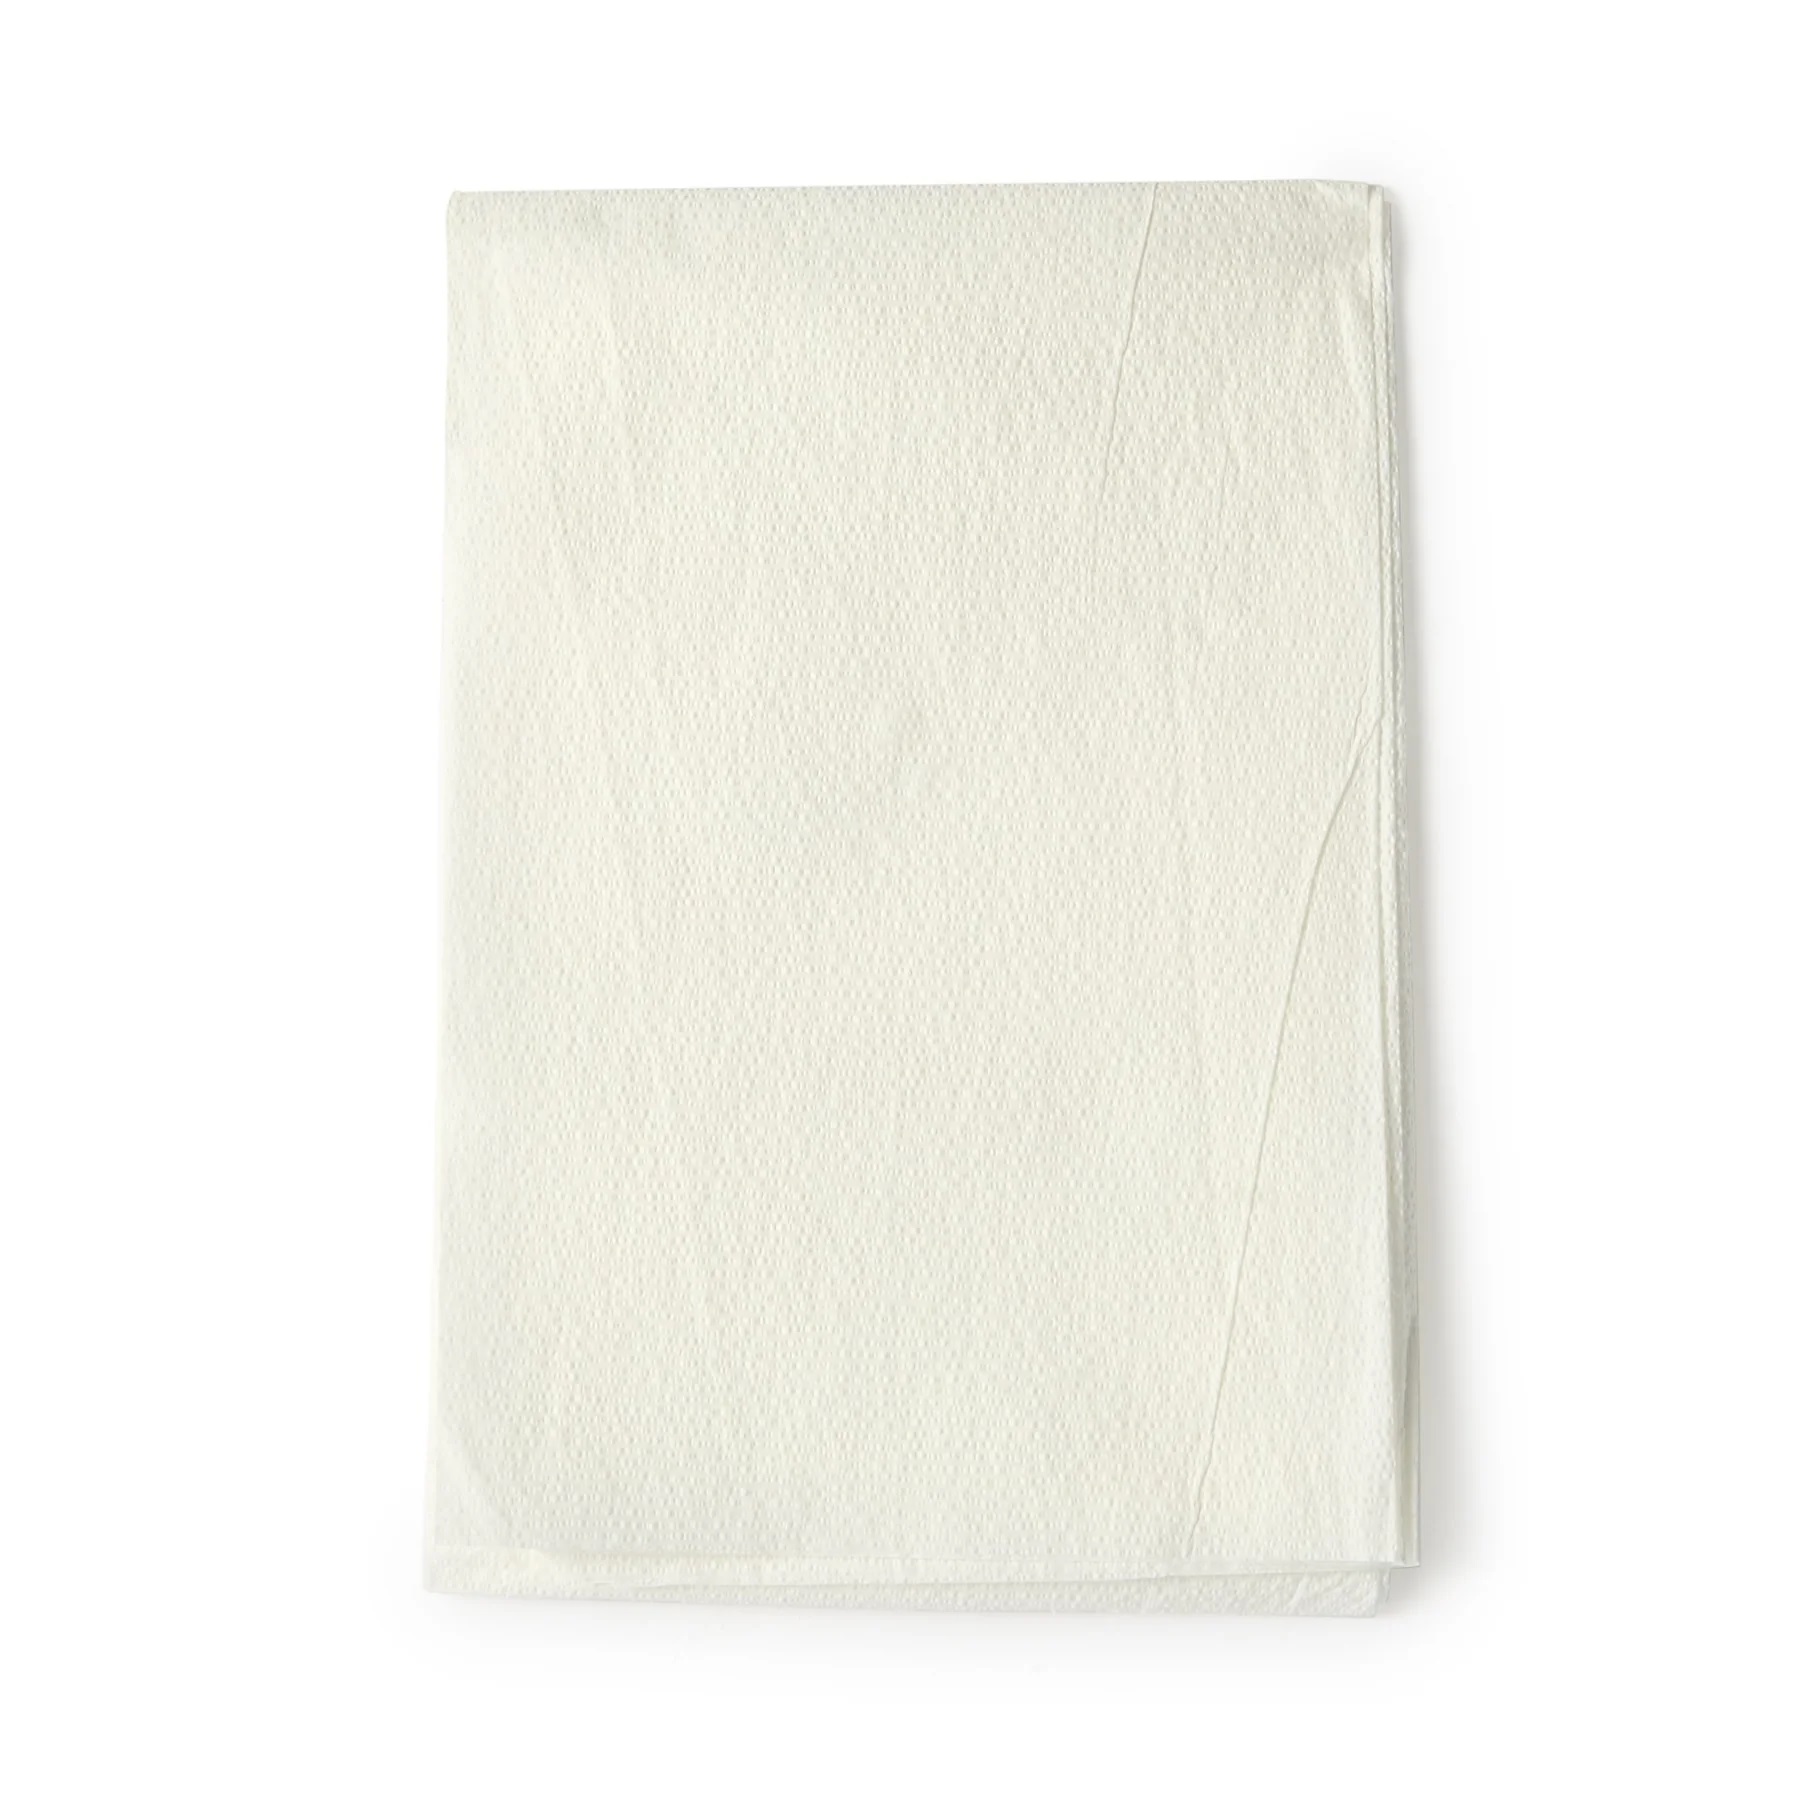 Drape Sheet 2-Ply White 40'x60' .. .  .  